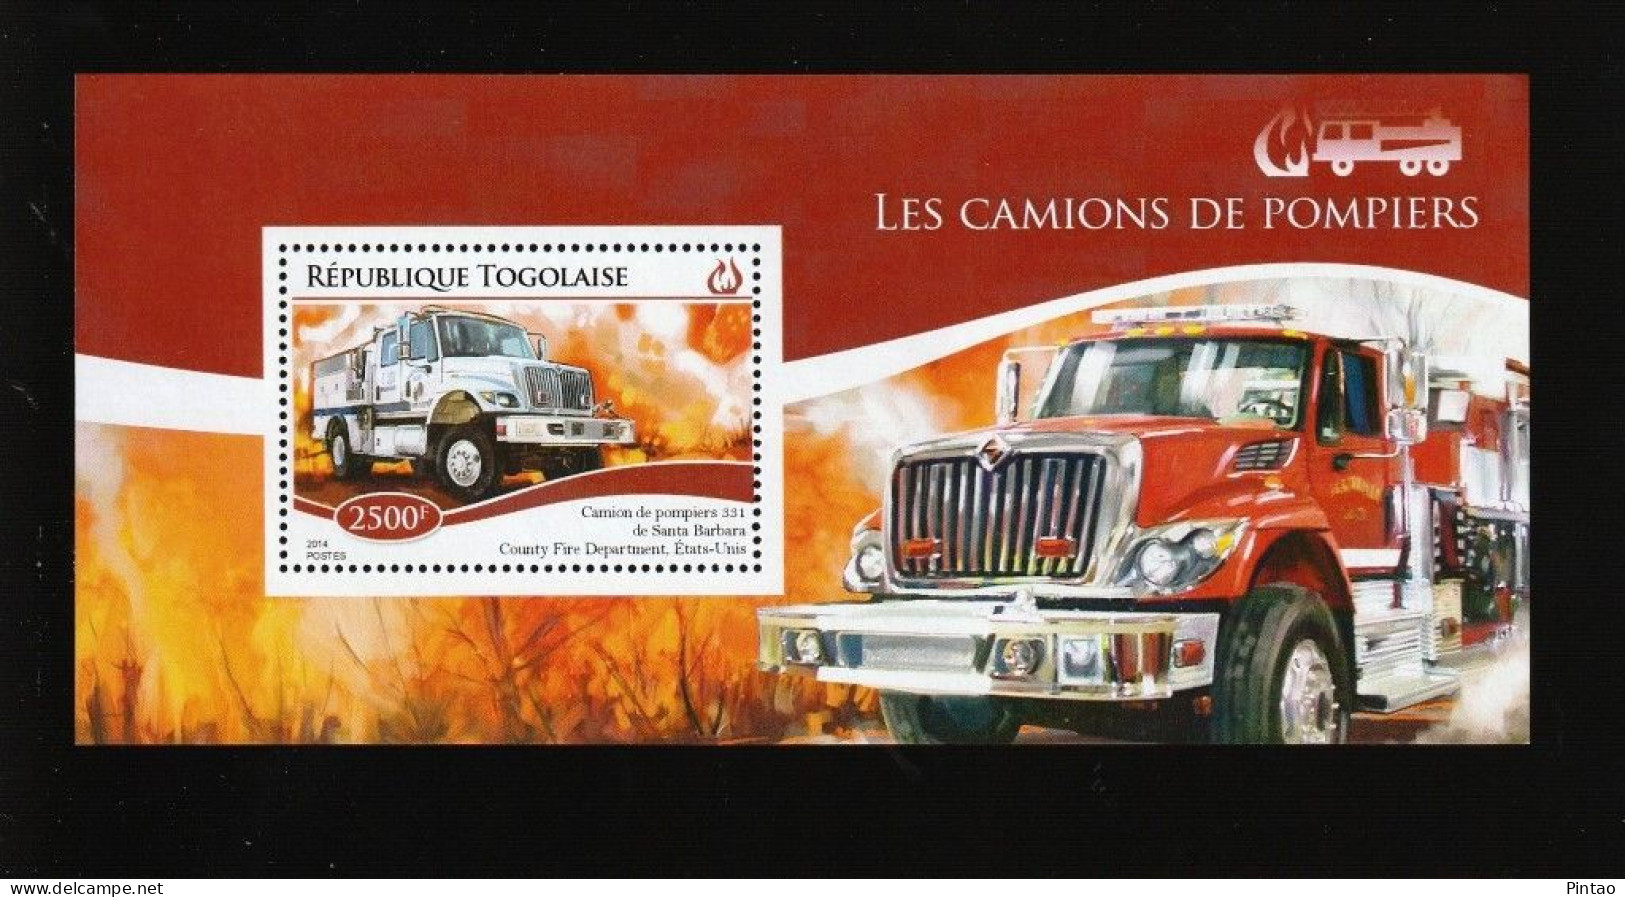 WW14423- TOGO 2014- MNH (BOMBEIROS) - Camions